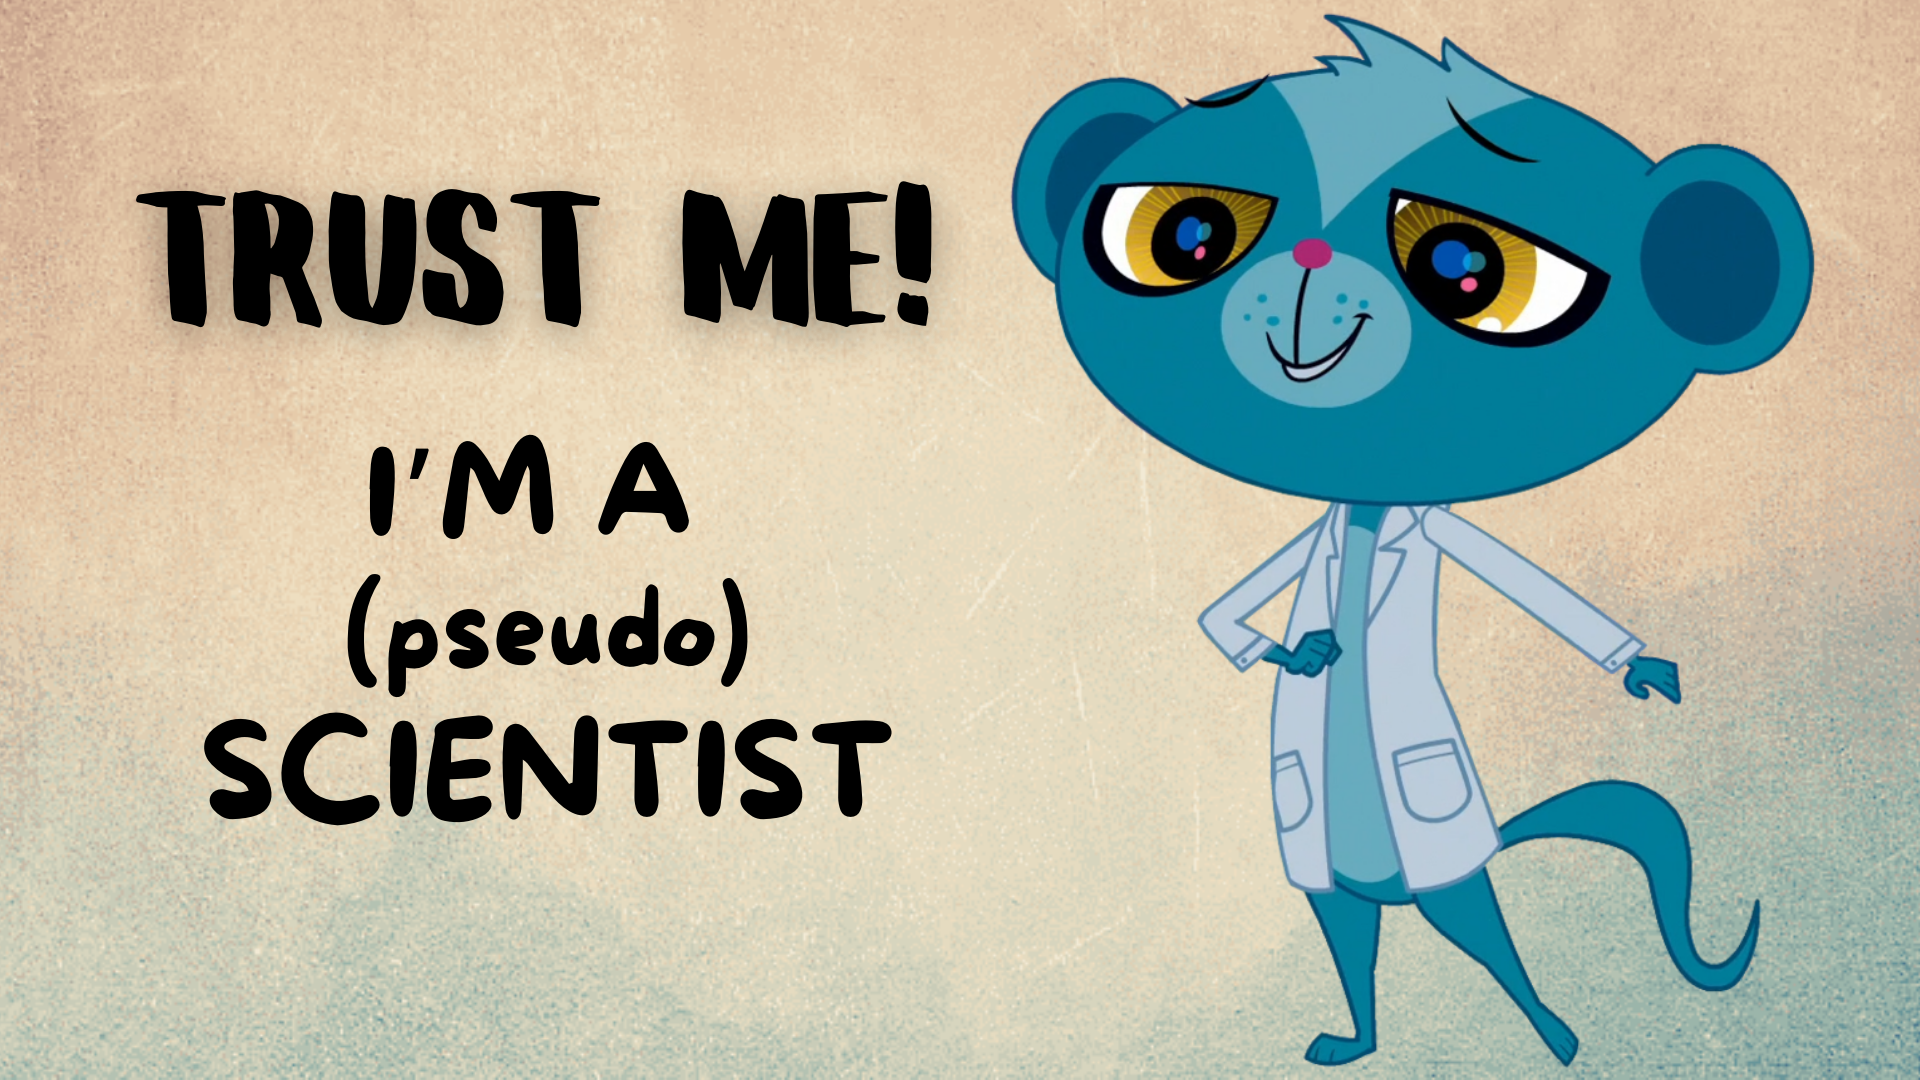 Trust me! I'm a pseudoscientist. Characteristics of pseudoscience. How to identify pseudoscience.